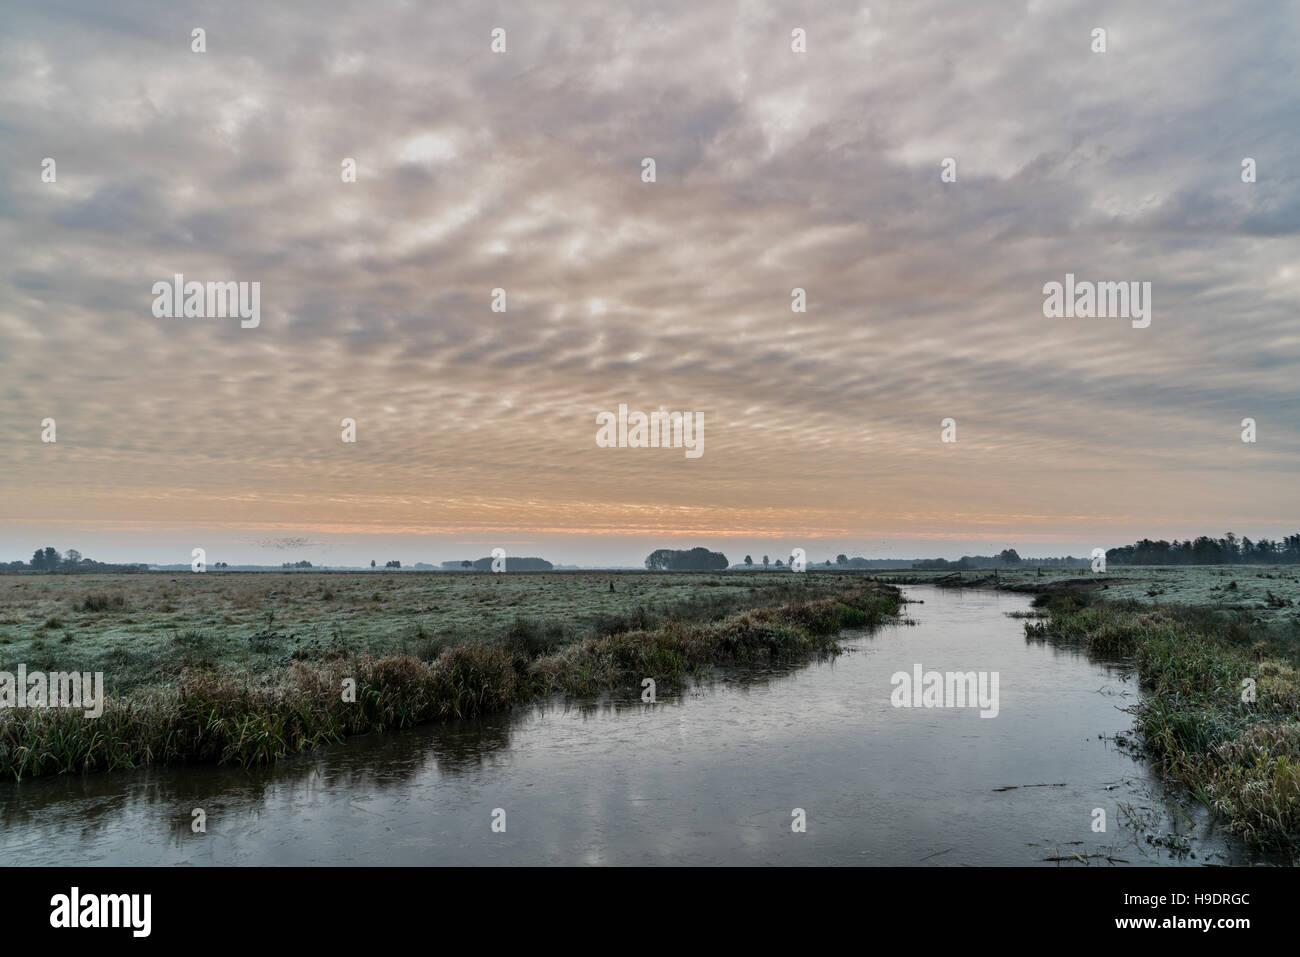 Der "Hunze" Fluss und des endlosen Himmels. Einer der schönsten Orte im nördlichen Teil der Niederlande. Stockfoto